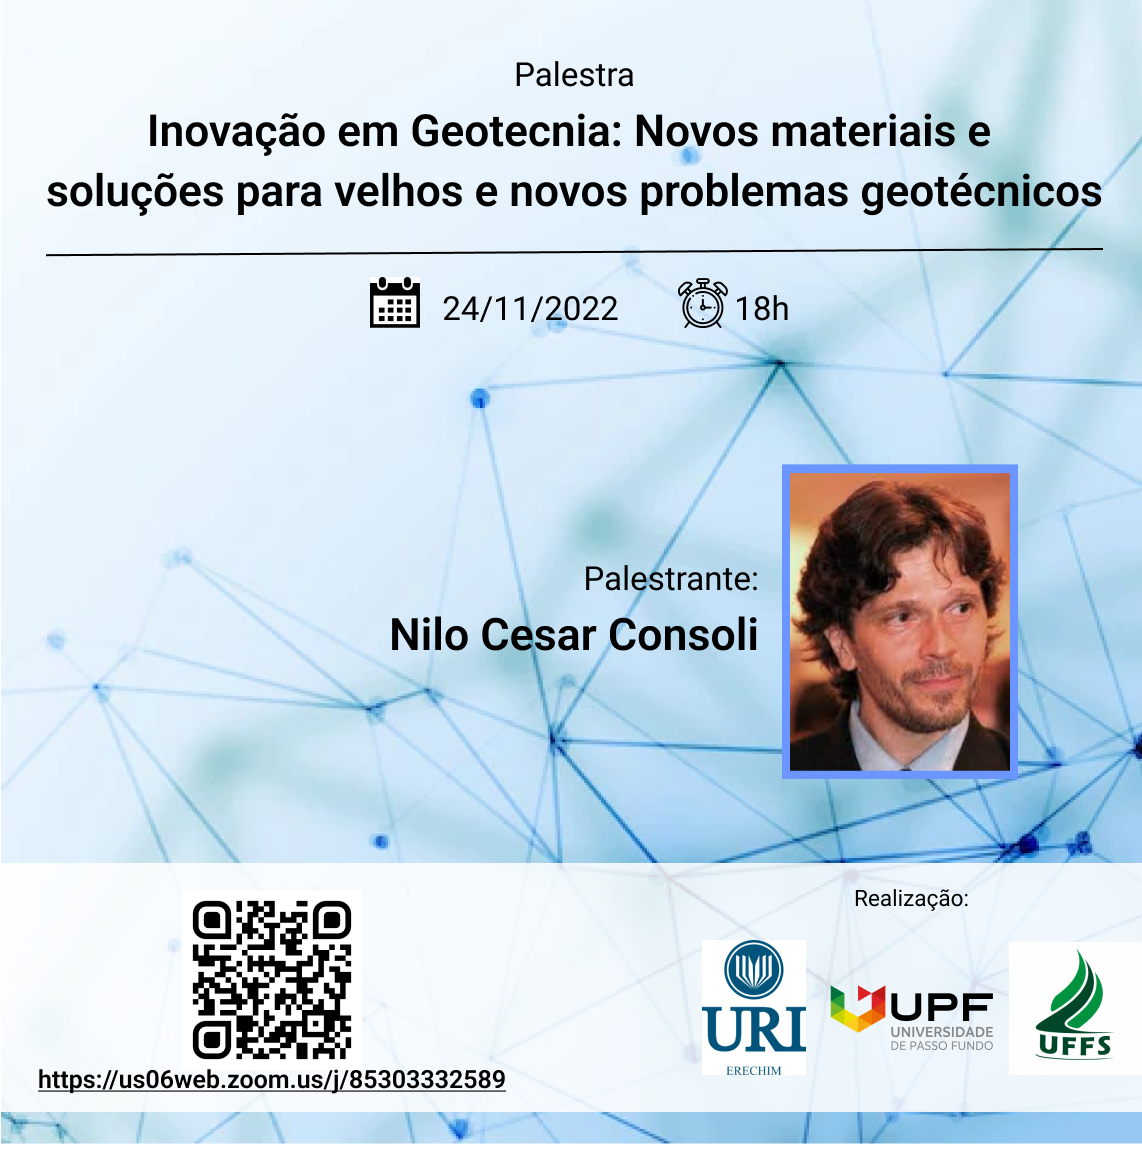 Palestra sobre Inovação em Geotecnia: Novos materiais e soluções para velhos e novos problemas geotécnicos